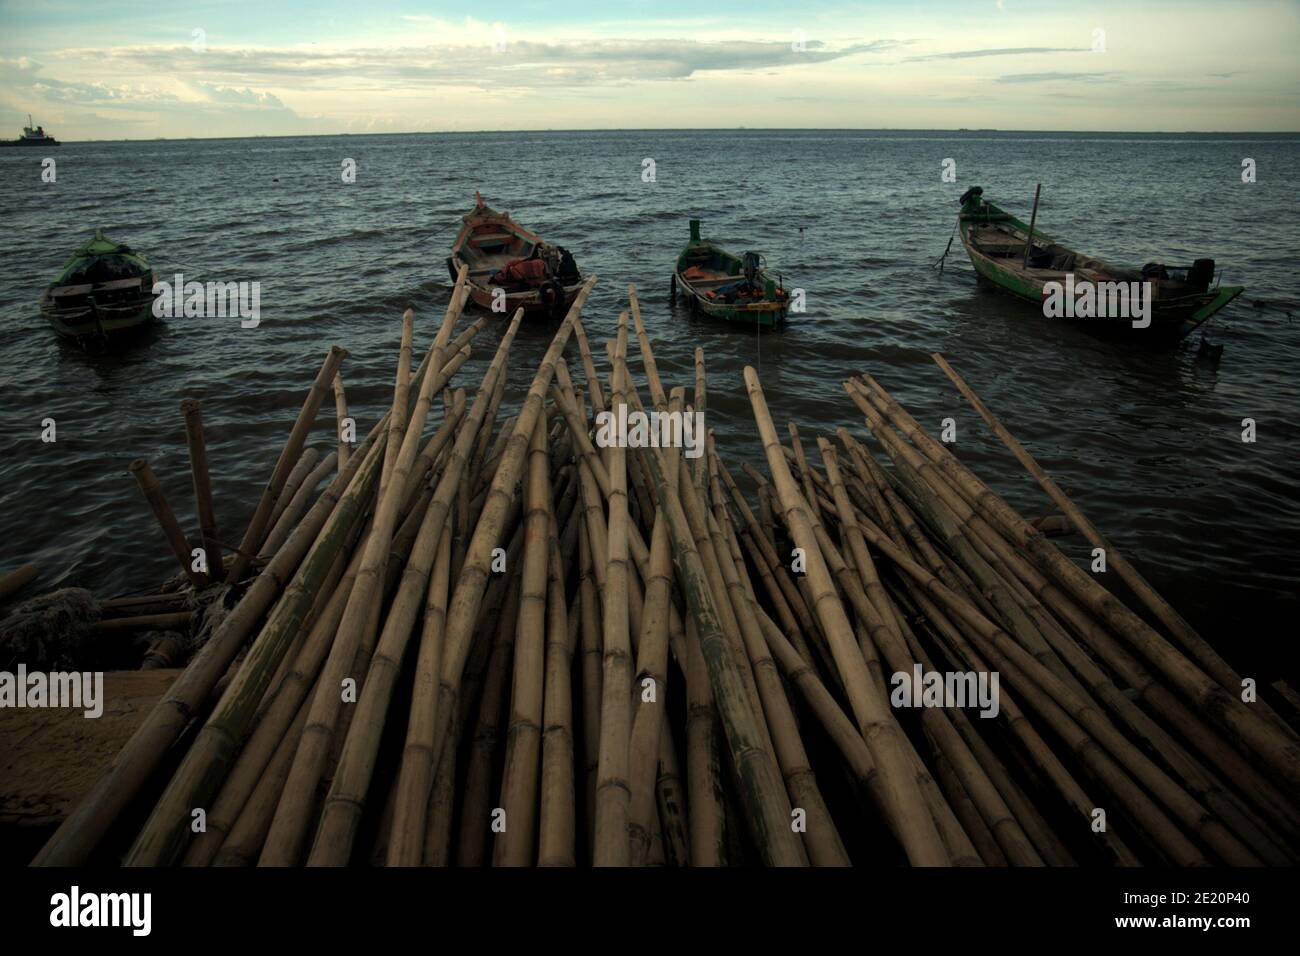 Poteaux de bambou à utiliser comme matériau de construction pour construire un bâtiment de pilotis au-dessus de l'eau de mer dans le village de pêcheurs de Cilincing sur la zone côtière de Jakarta, Indonésie. Photo d'archives (2008). Banque D'Images